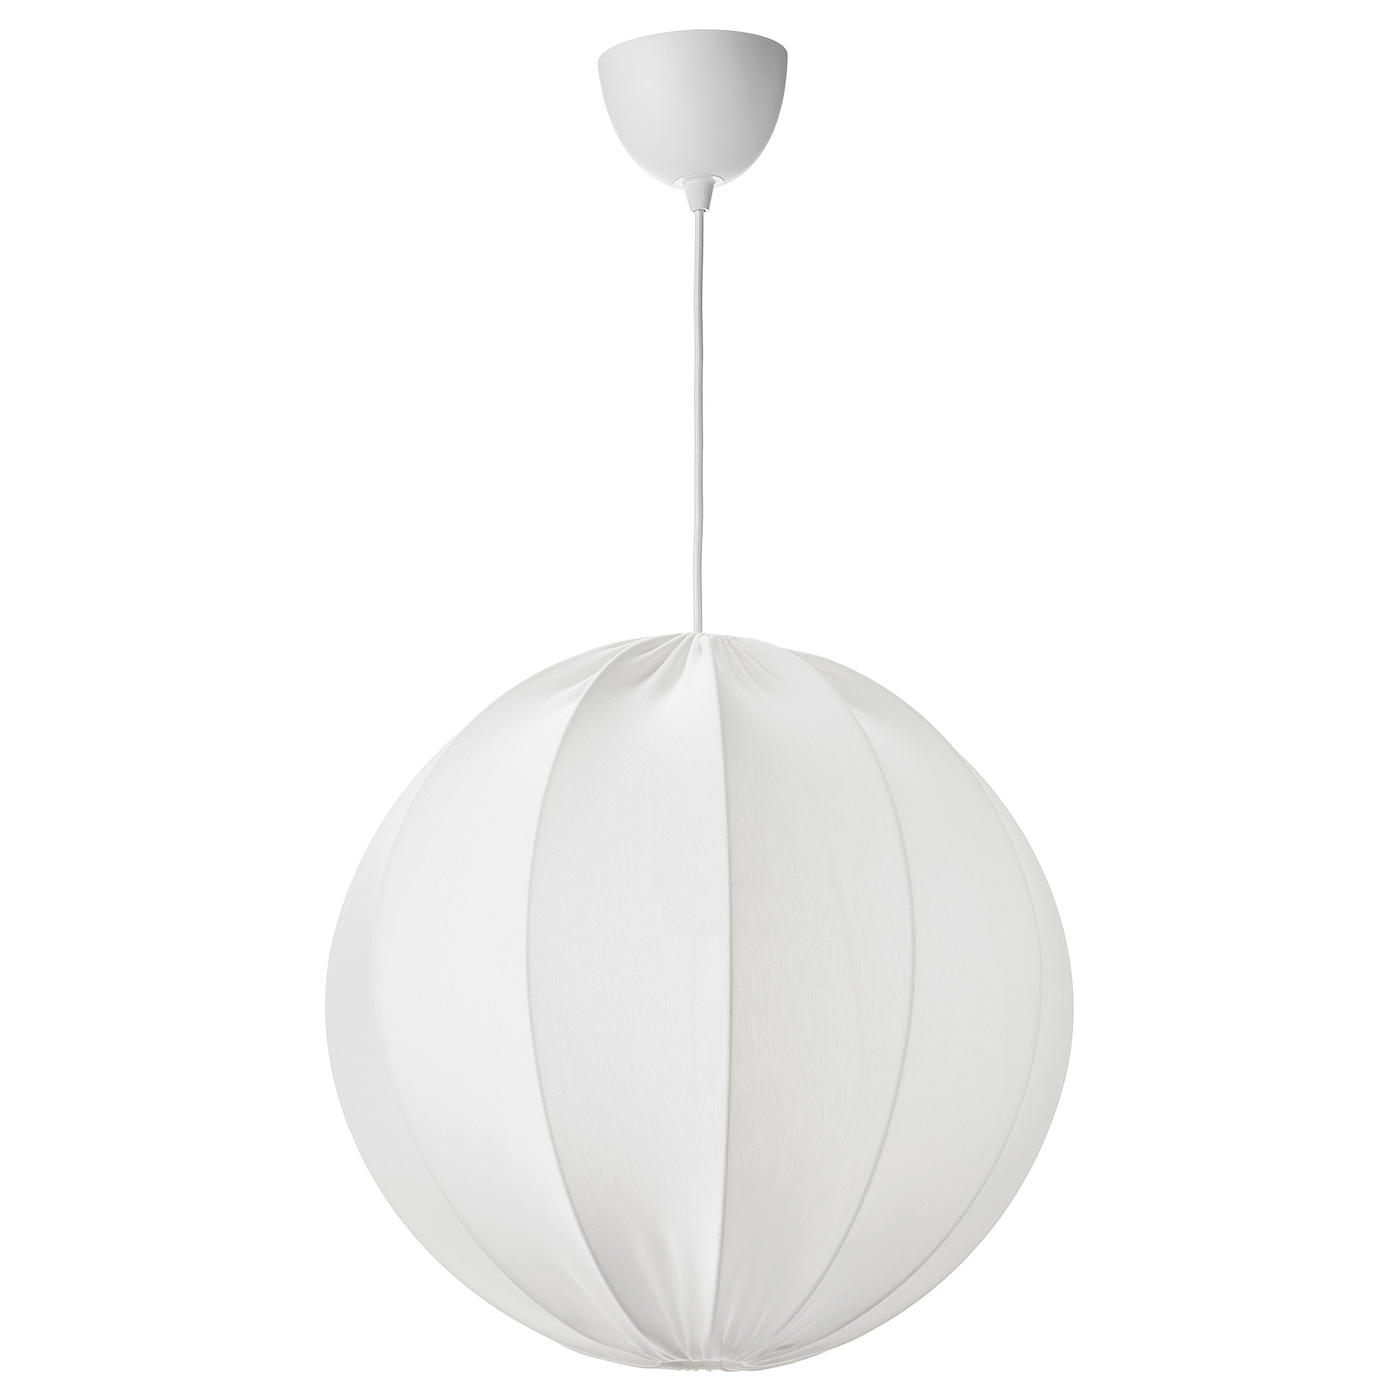 Подвесной светильник - REGNSKUR / SUNNEBY  IKEA / РЭГНСКУР / СУННЕБЮ ИКЕА, 50 см, белый